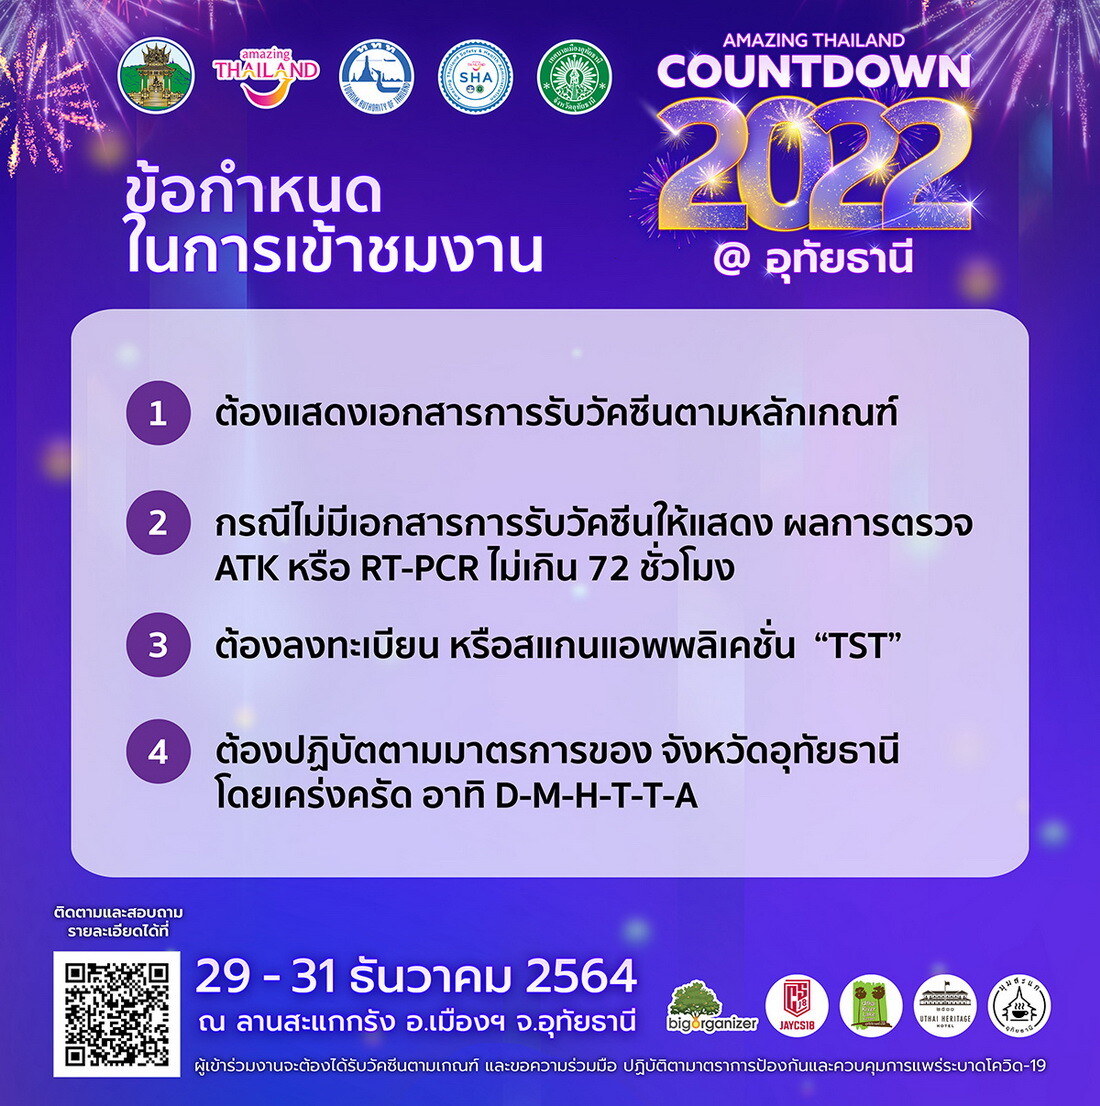 การท่องเที่ยวแห่งประเทศไทยและจังหวัดอุทัยธานี เตรียมพร้อมจัดงานฉลองต้อนรับปีใหม่ใน "AMAZING THAILAND COUNTDOWN 2022 @ อุทัยธานี" ในระหว่างวันที่ 29 - 31 ธันวาคมนี้